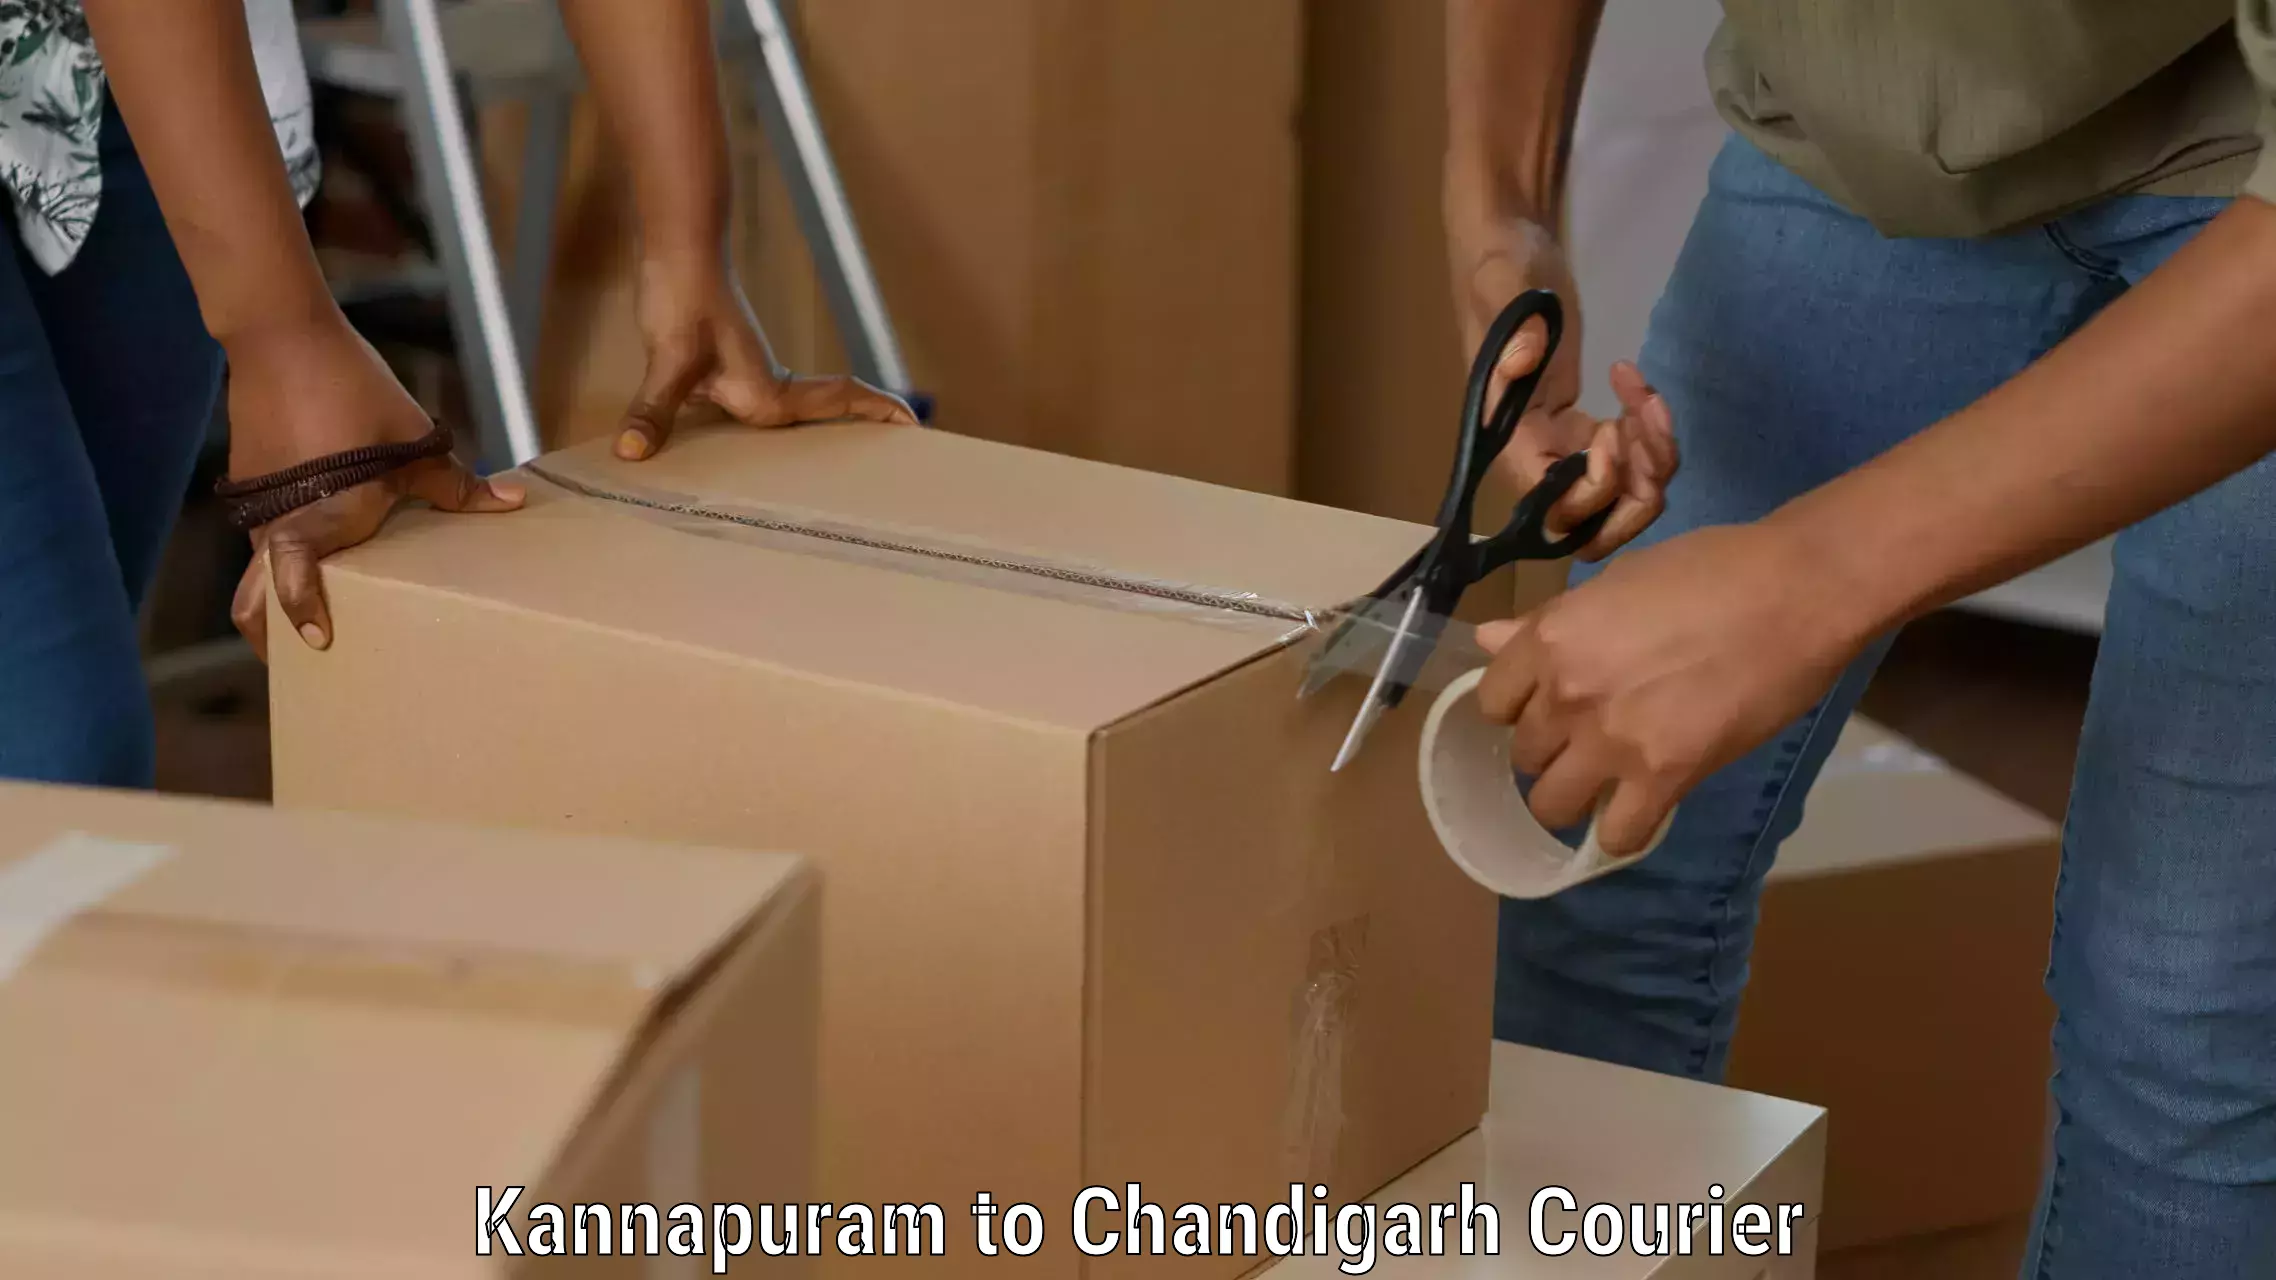 Express package handling Kannapuram to Chandigarh